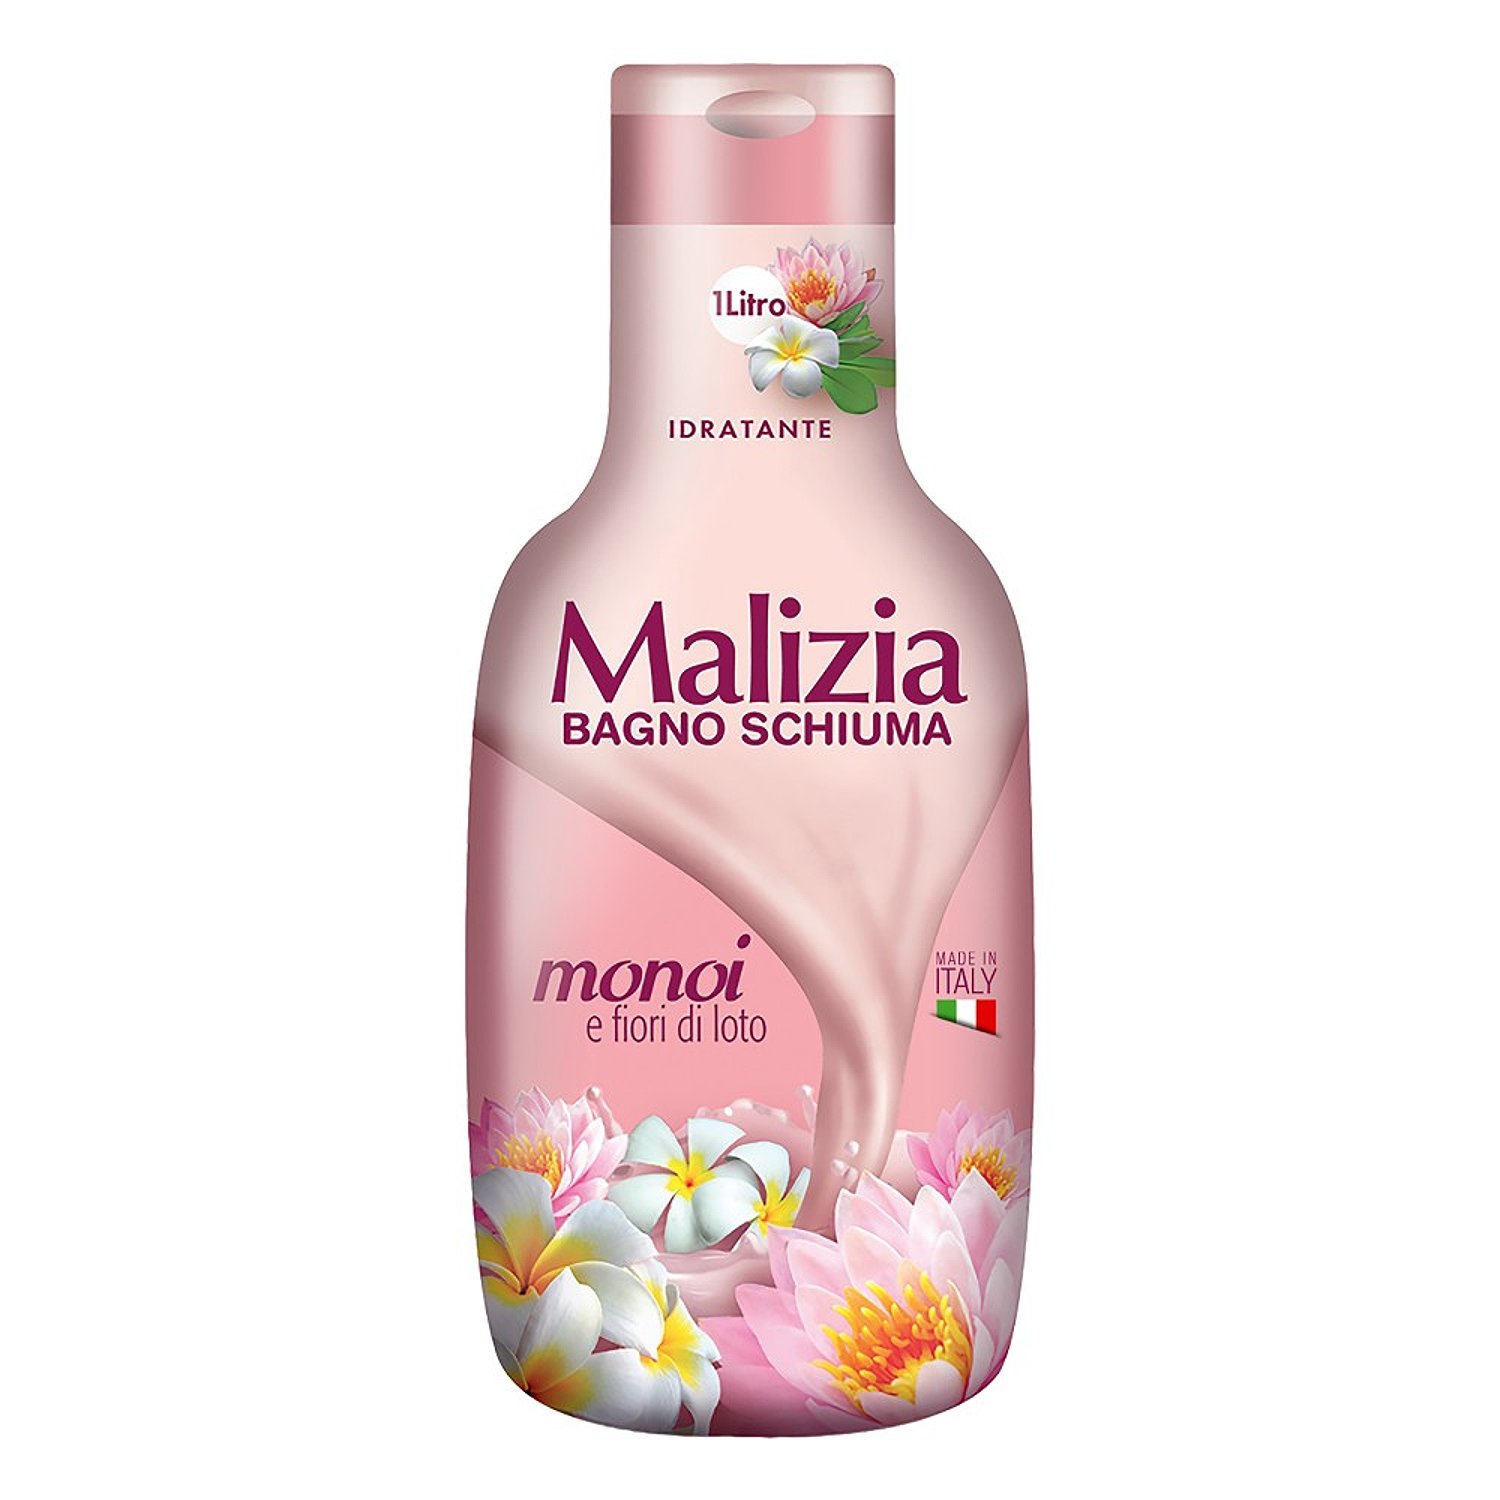 Malizia Пена для ванны Monoi & Lotus flowers 1000 мл